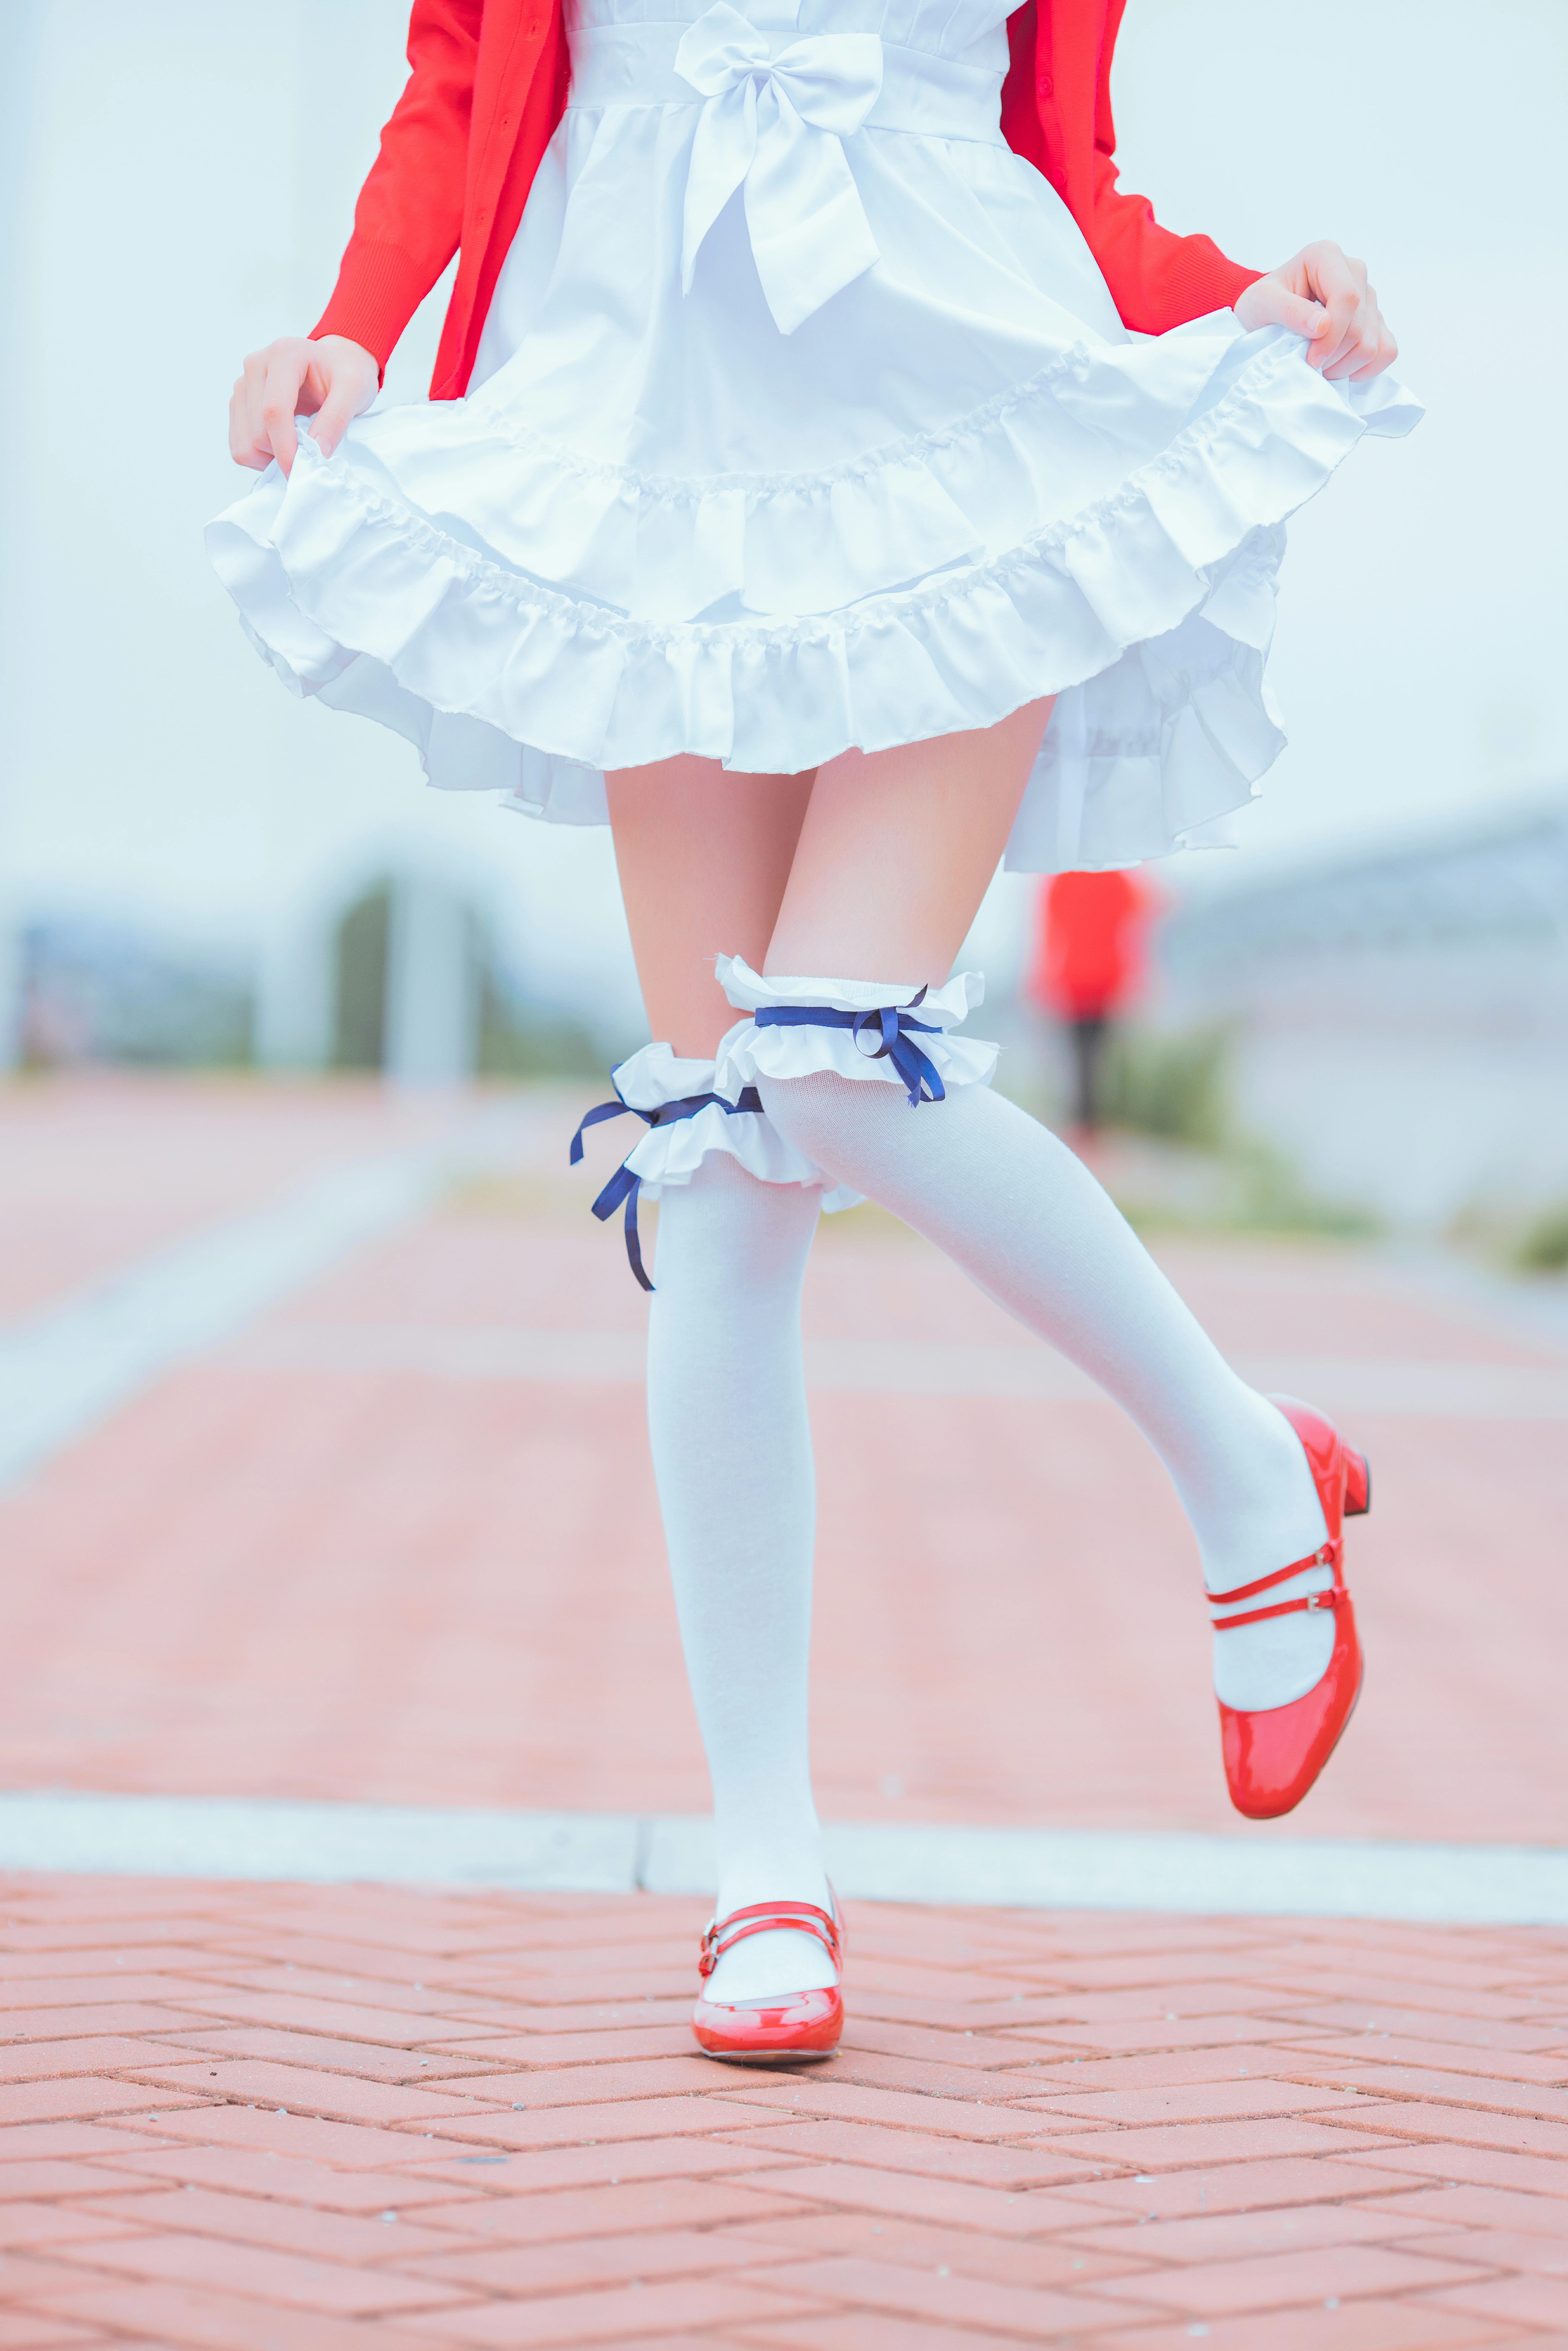 清纯少女 桜桃喵 红色外套与白色连衣裙加白色丝袜美腿街拍写真,0013